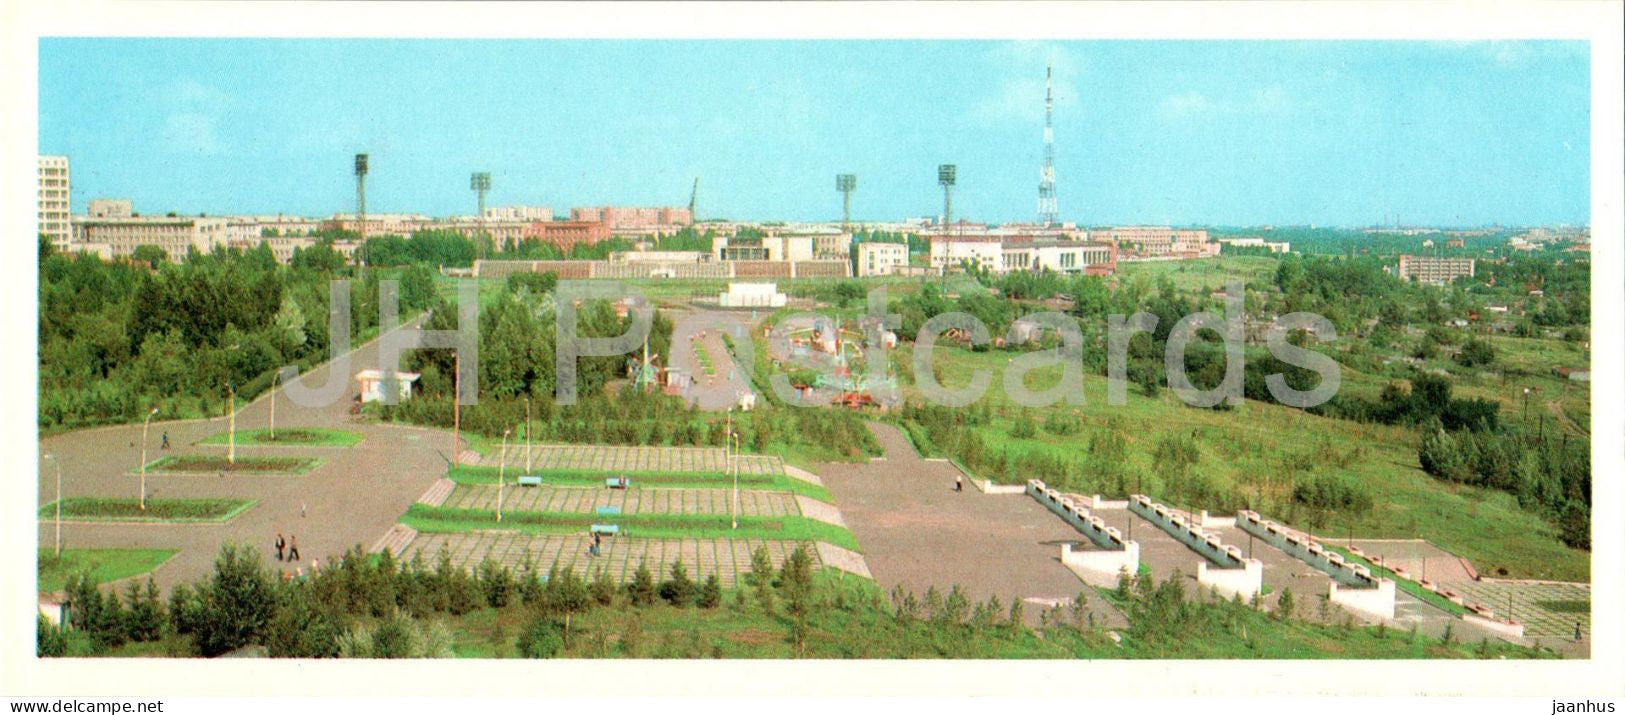 Omsk - Recreation park of Sovetskaya district - stadium - 1982 - Russia USSR - unused - JH Postcards